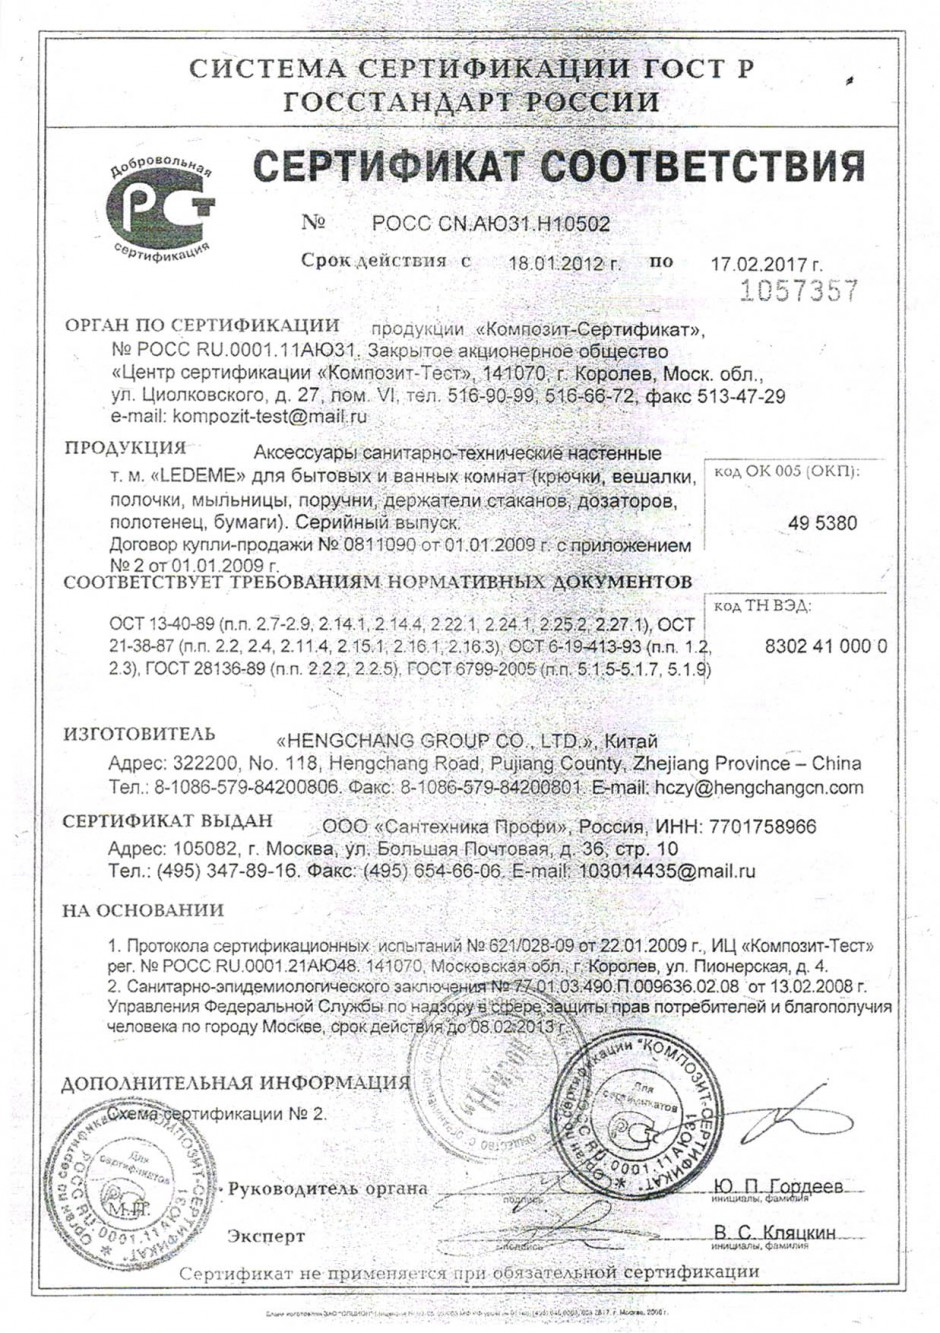 Смеситель см-ву-ШЛР сертификат соответствия